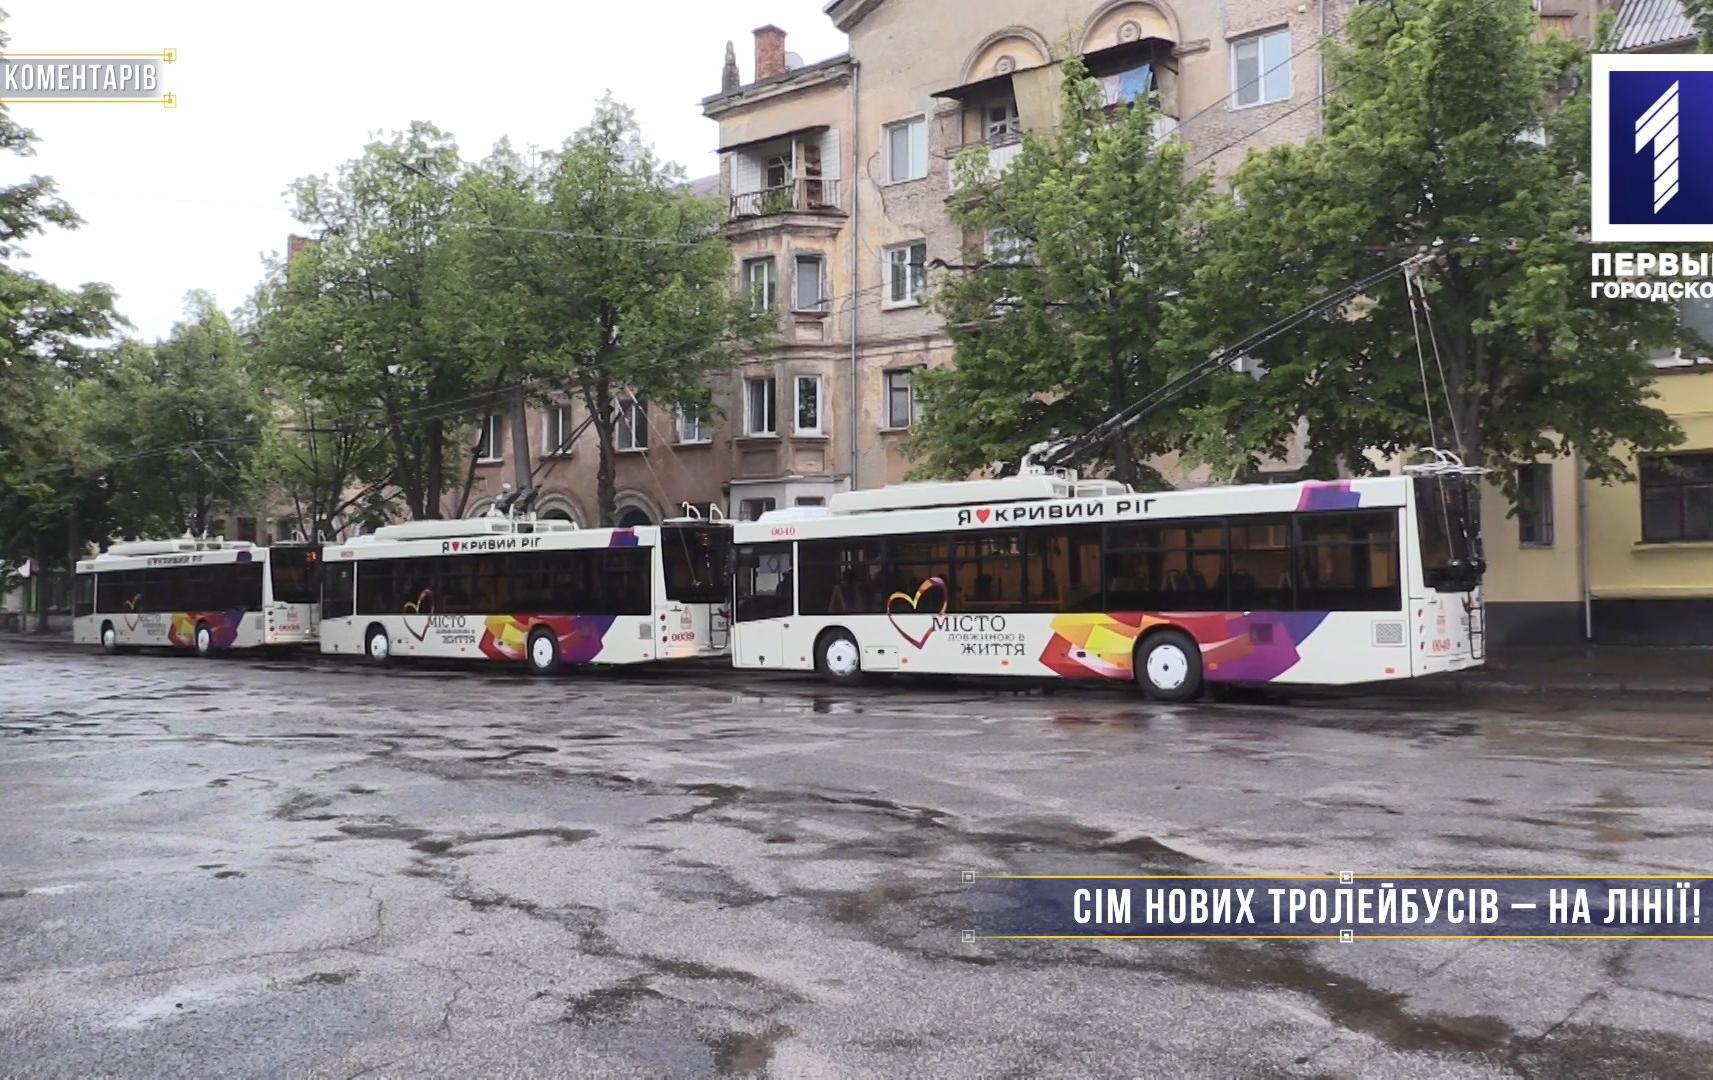 Без коментарів: сім нових тролейбусів у Кривому Розі